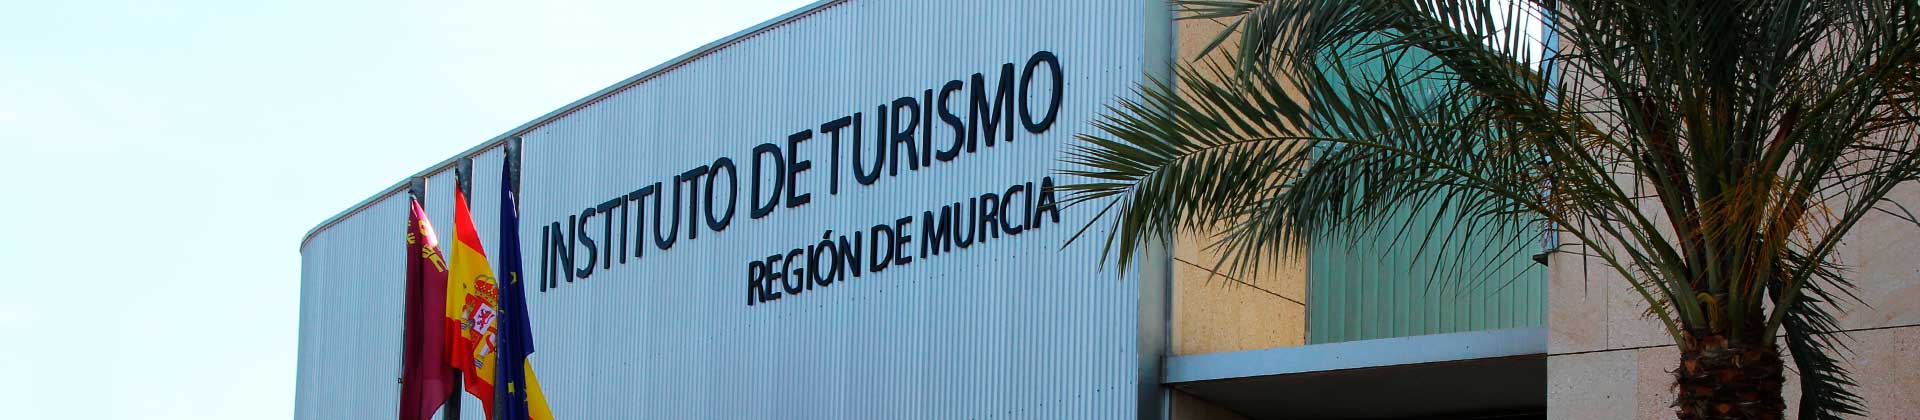 Fachada del Instituto de turismo de la Región de Murcia